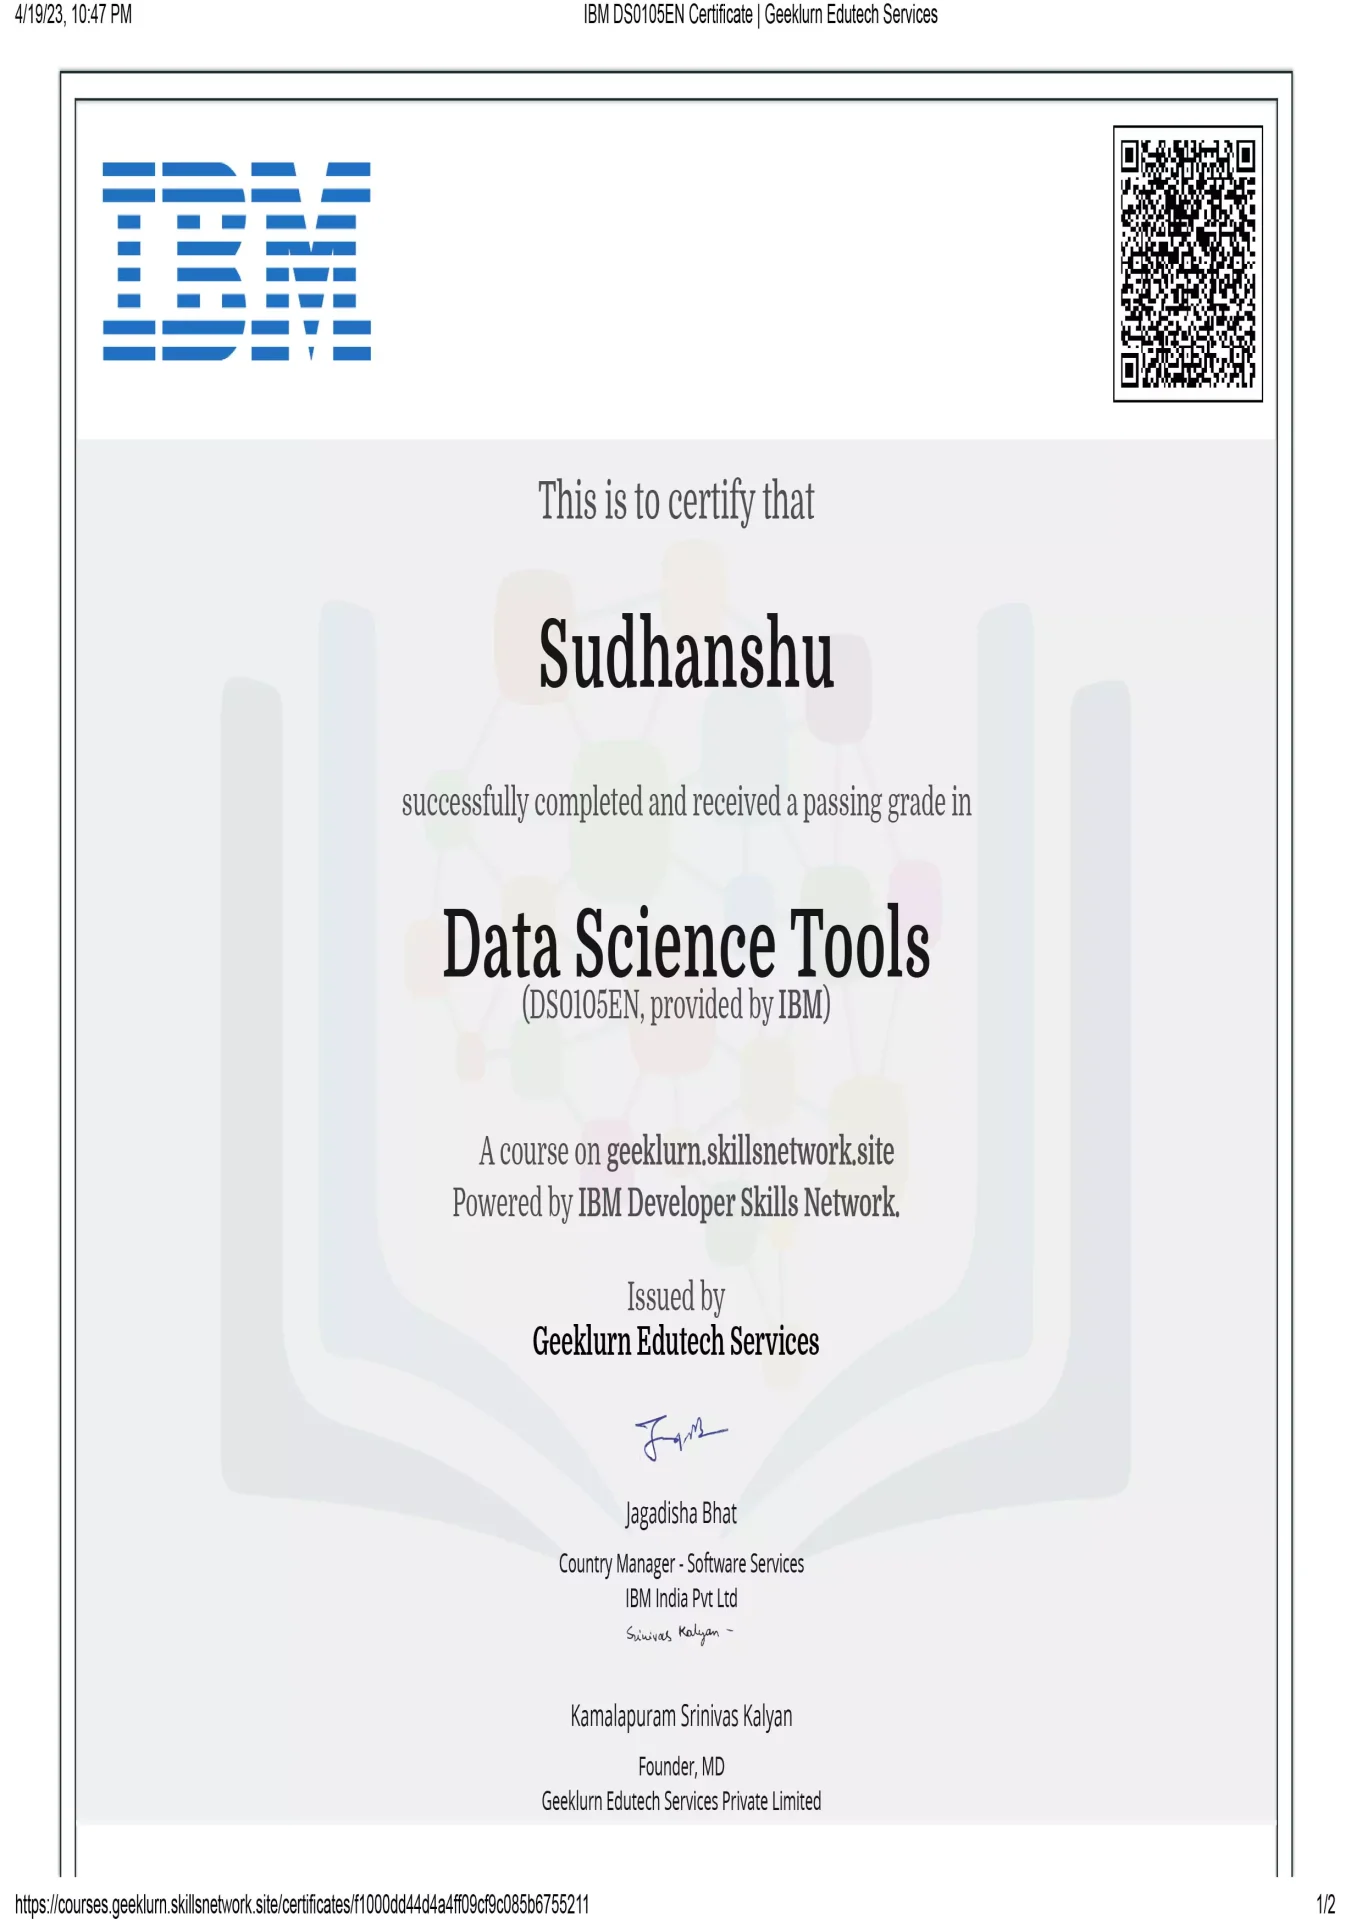 ibm-ds0105en-certificate-geeklurn-edutech-services-5